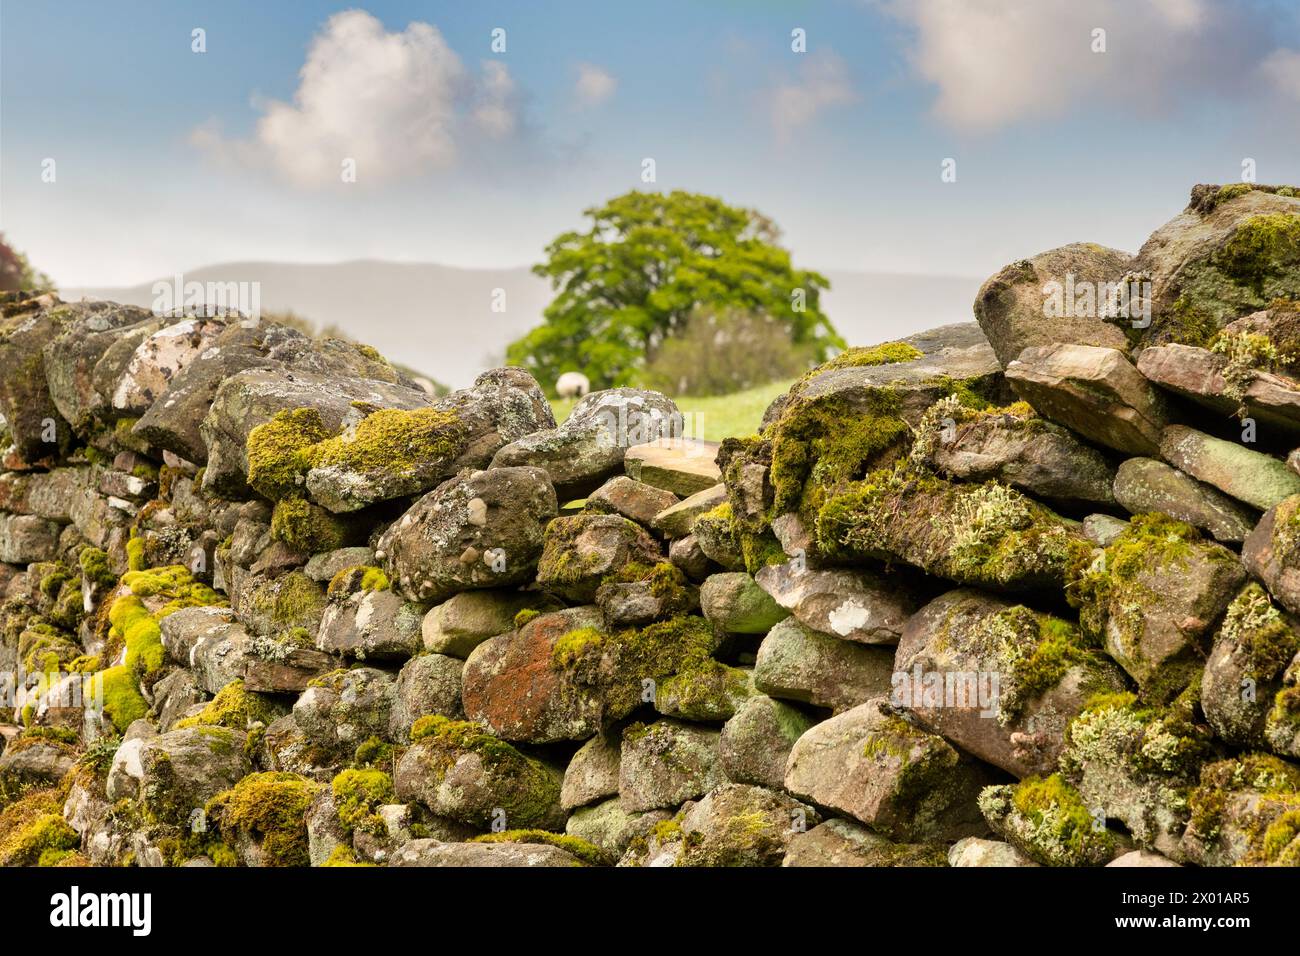 Nahaufnahme der Dry Stone Wall in den Yorkshire Dales, Großbritannien. Der Fokus liegt auf der Wand, möglicherweise am besten bei kleinen Größen. Stockfoto